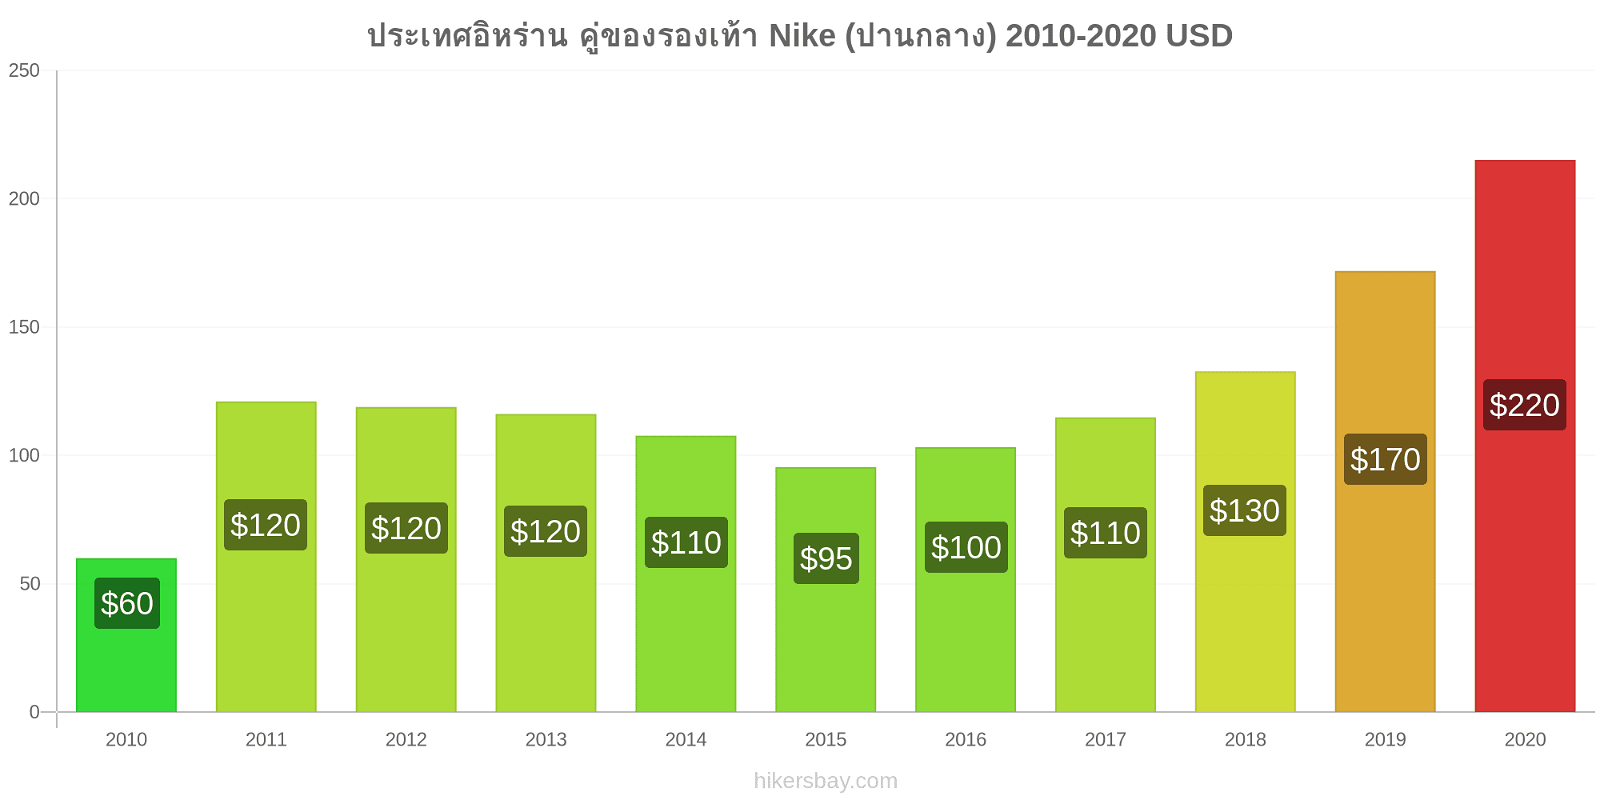 ประเทศอิหร่าน การเปลี่ยนแปลงราคา คู่ของรองเท้า Nike (ปานกลาง) hikersbay.com